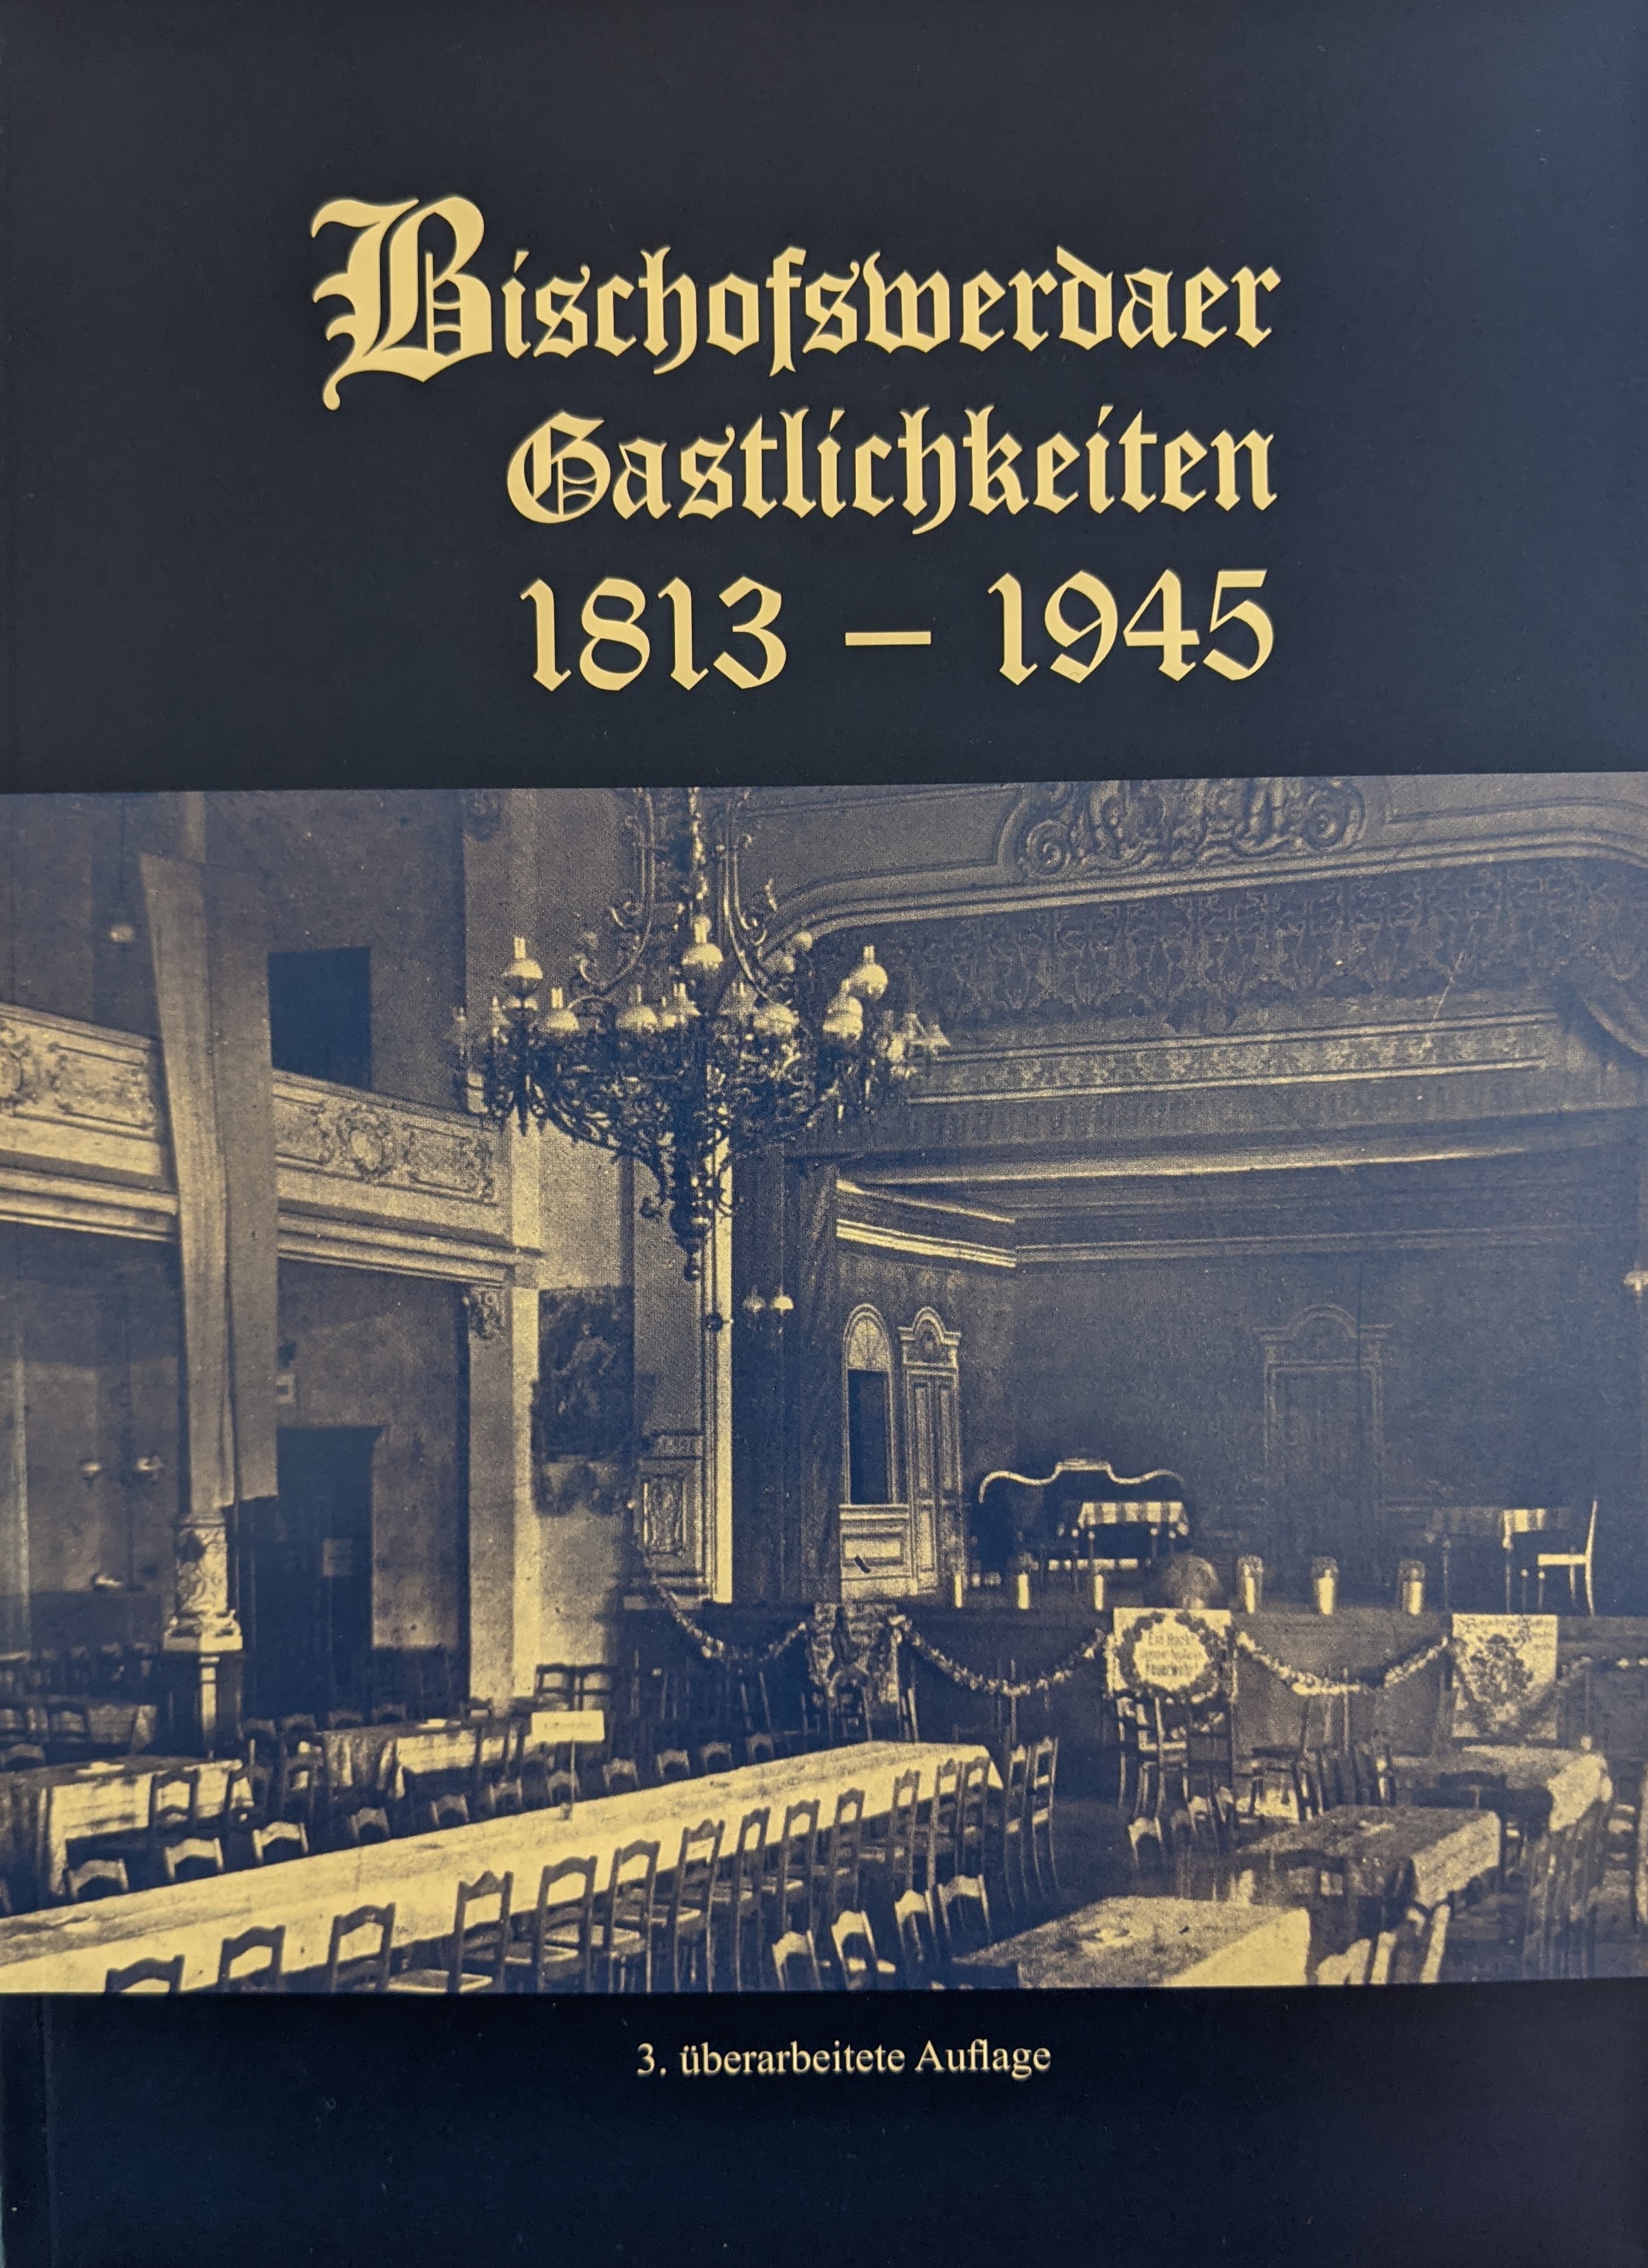 Bischofswerdaer Gastlichkeiten 1813 - 1945